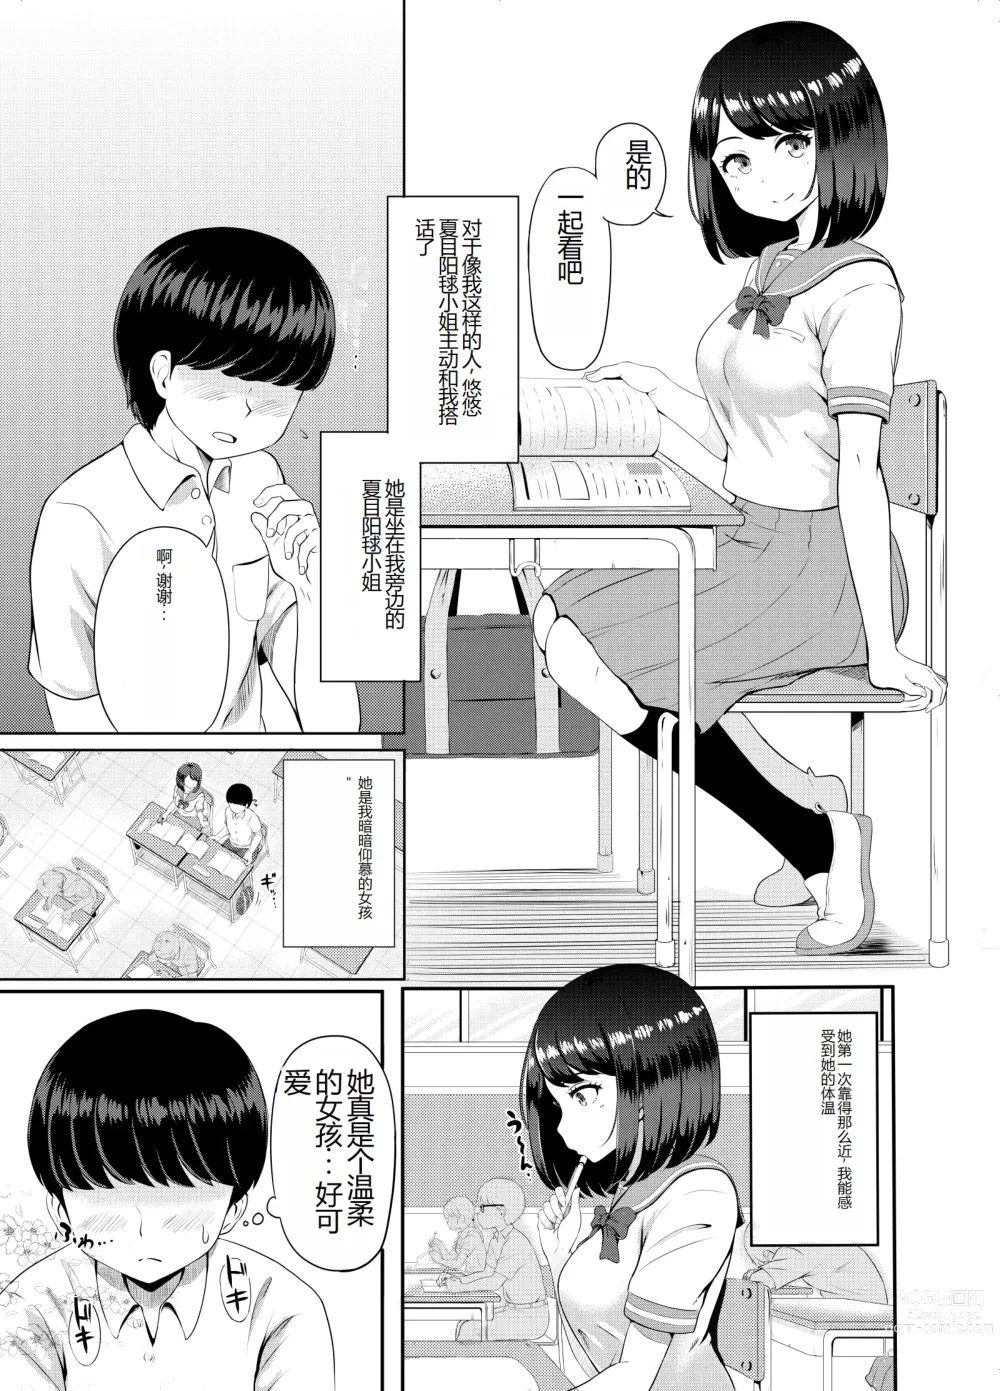 Page 4 of doujinshi 2-nen 3-kumi